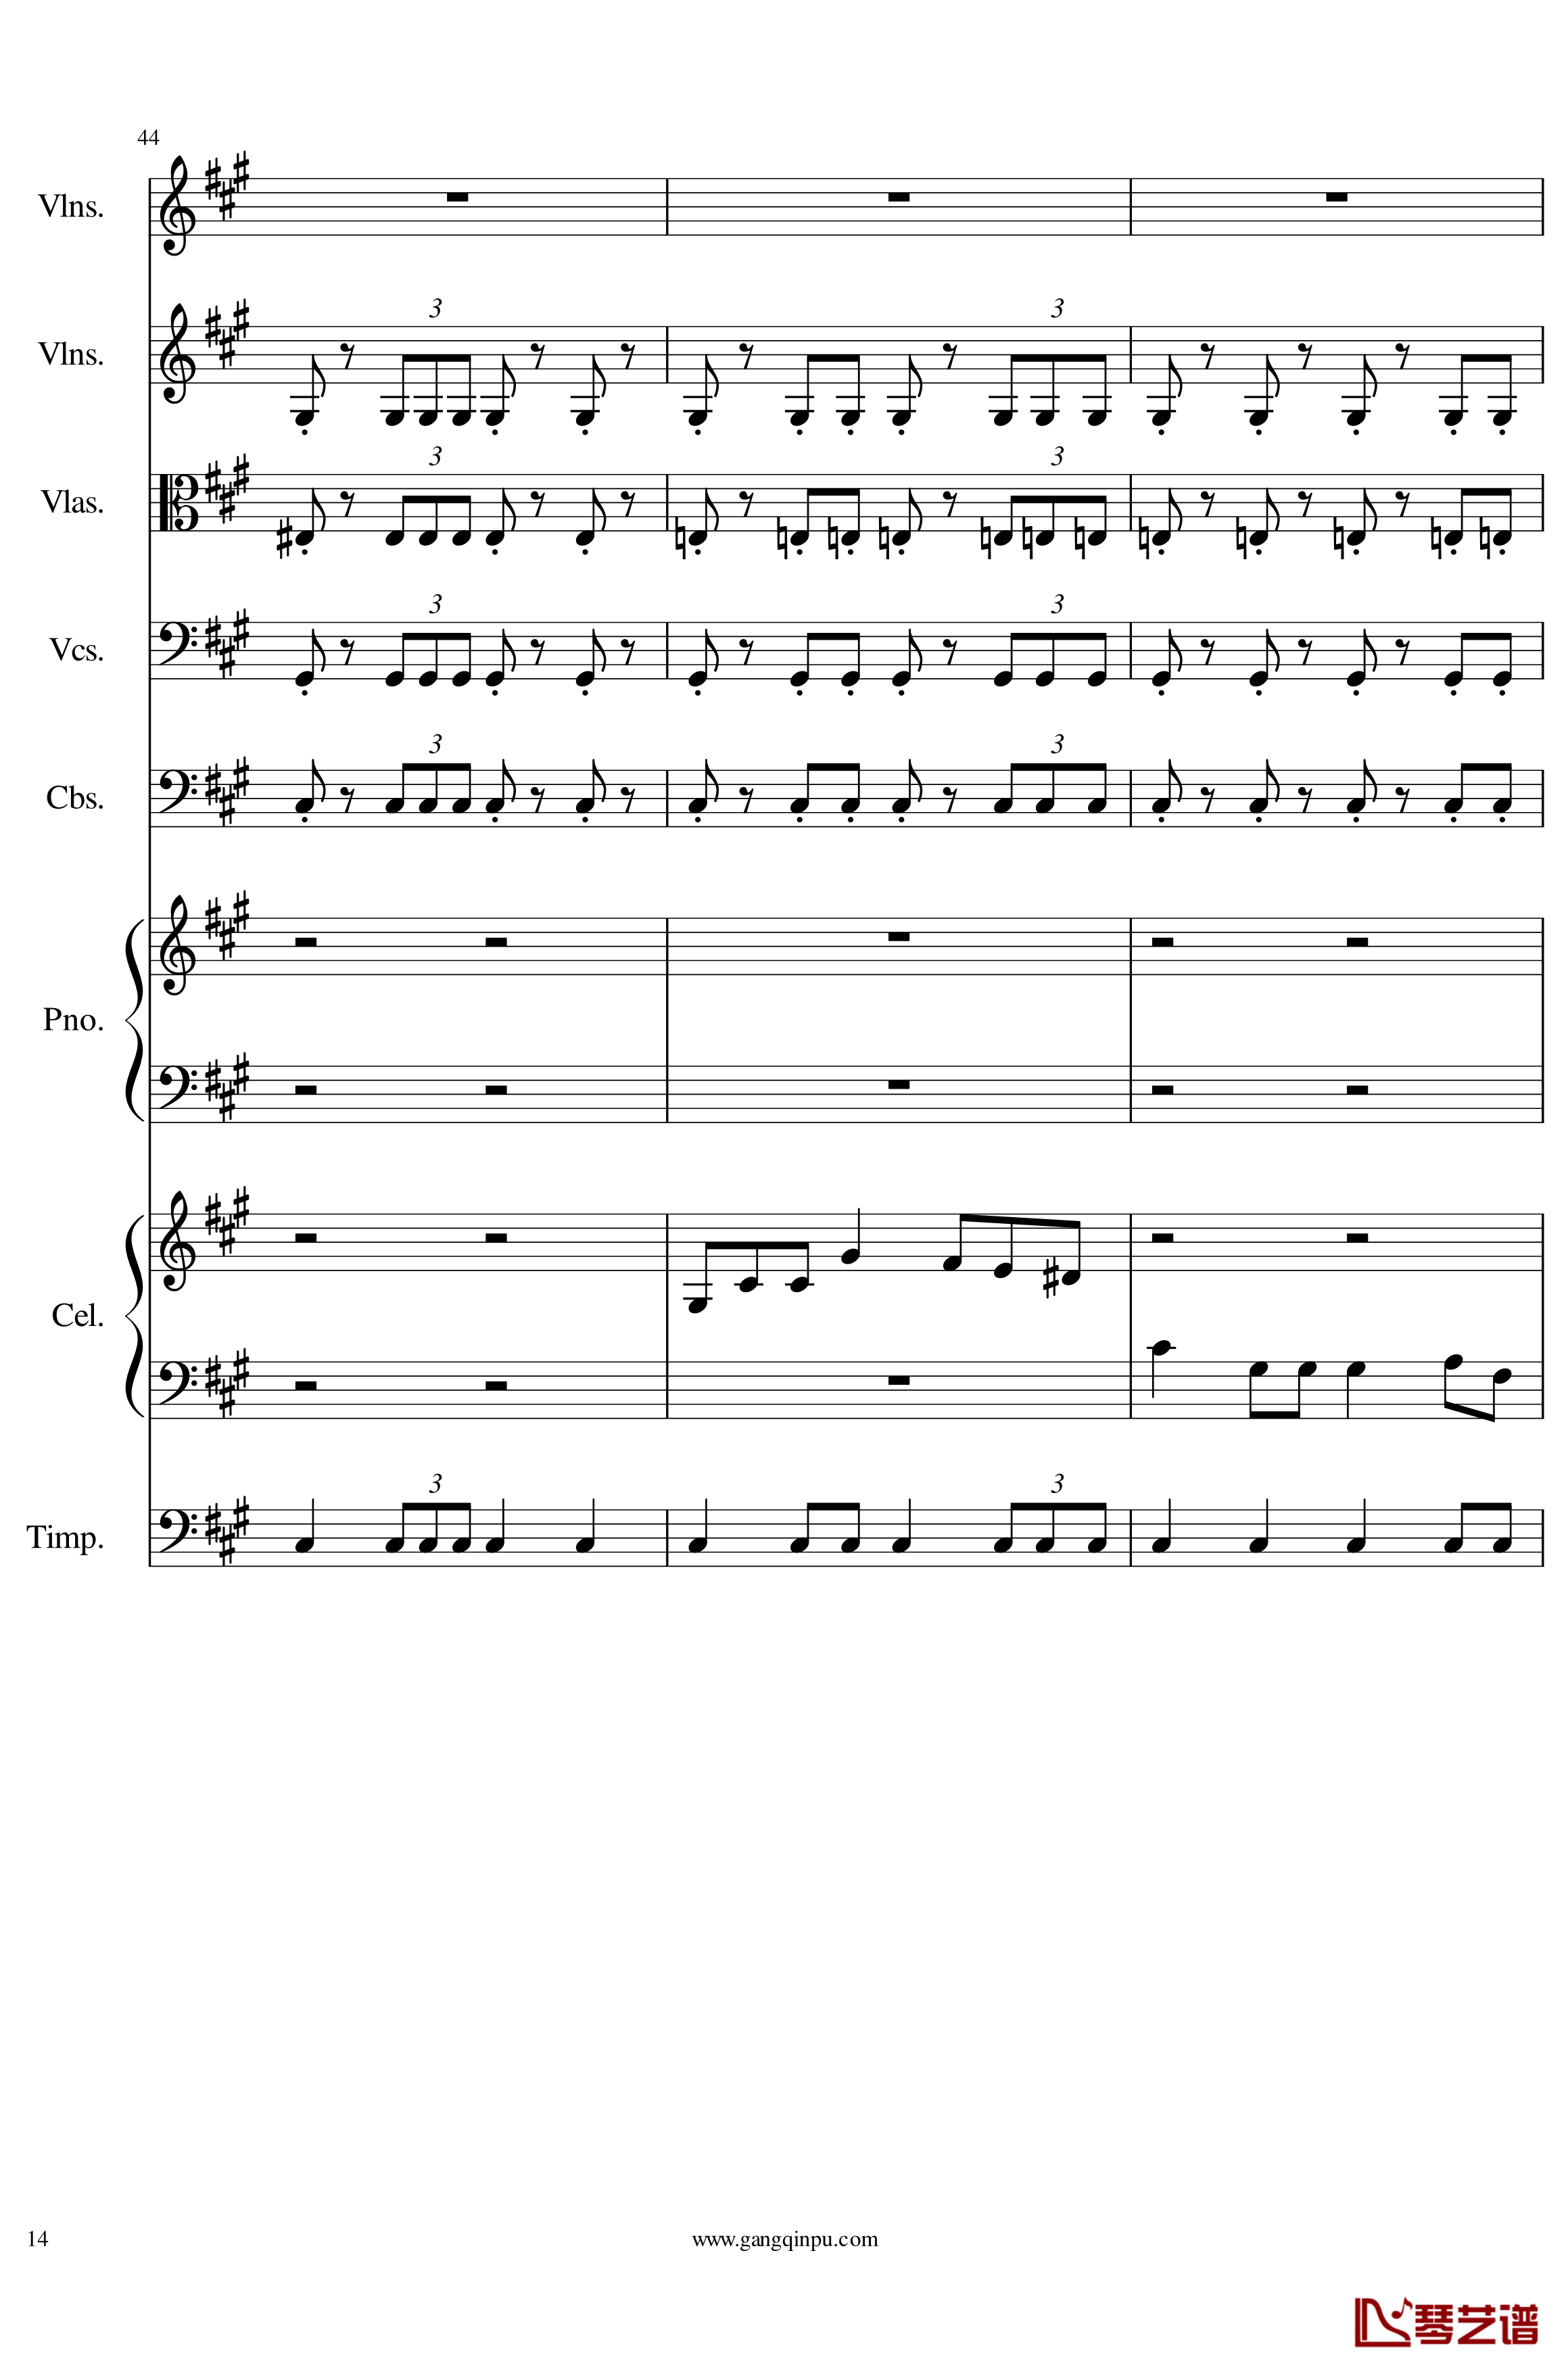 光高校庆序曲Op.44钢琴谱-一个球14